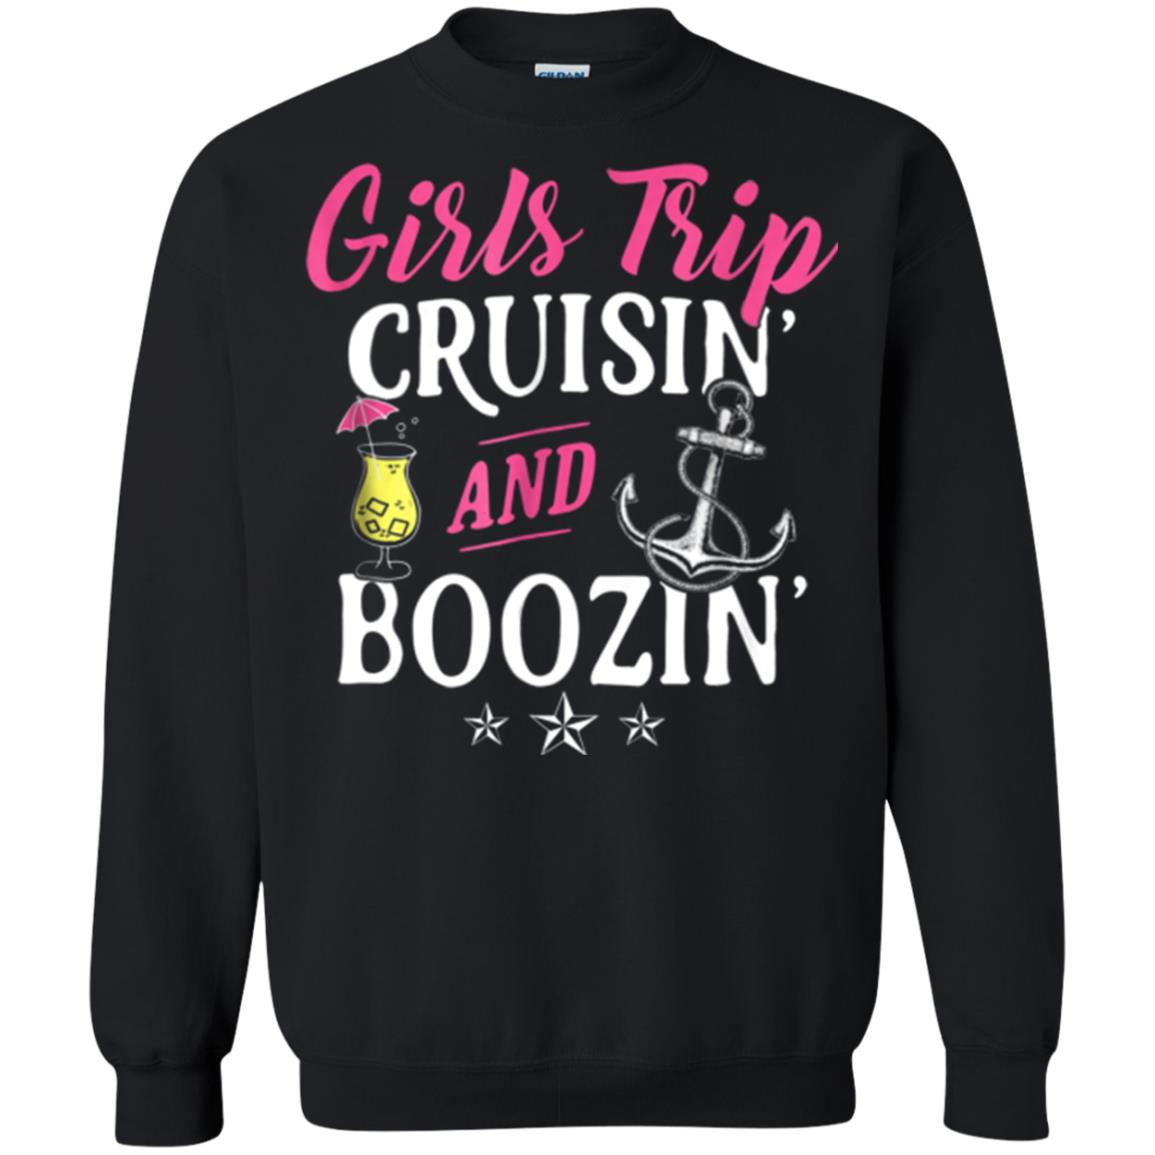 Inktee Store - Girls Trip Cruisin And Boozin Funny Cruise Vacation Sweatshirt Image